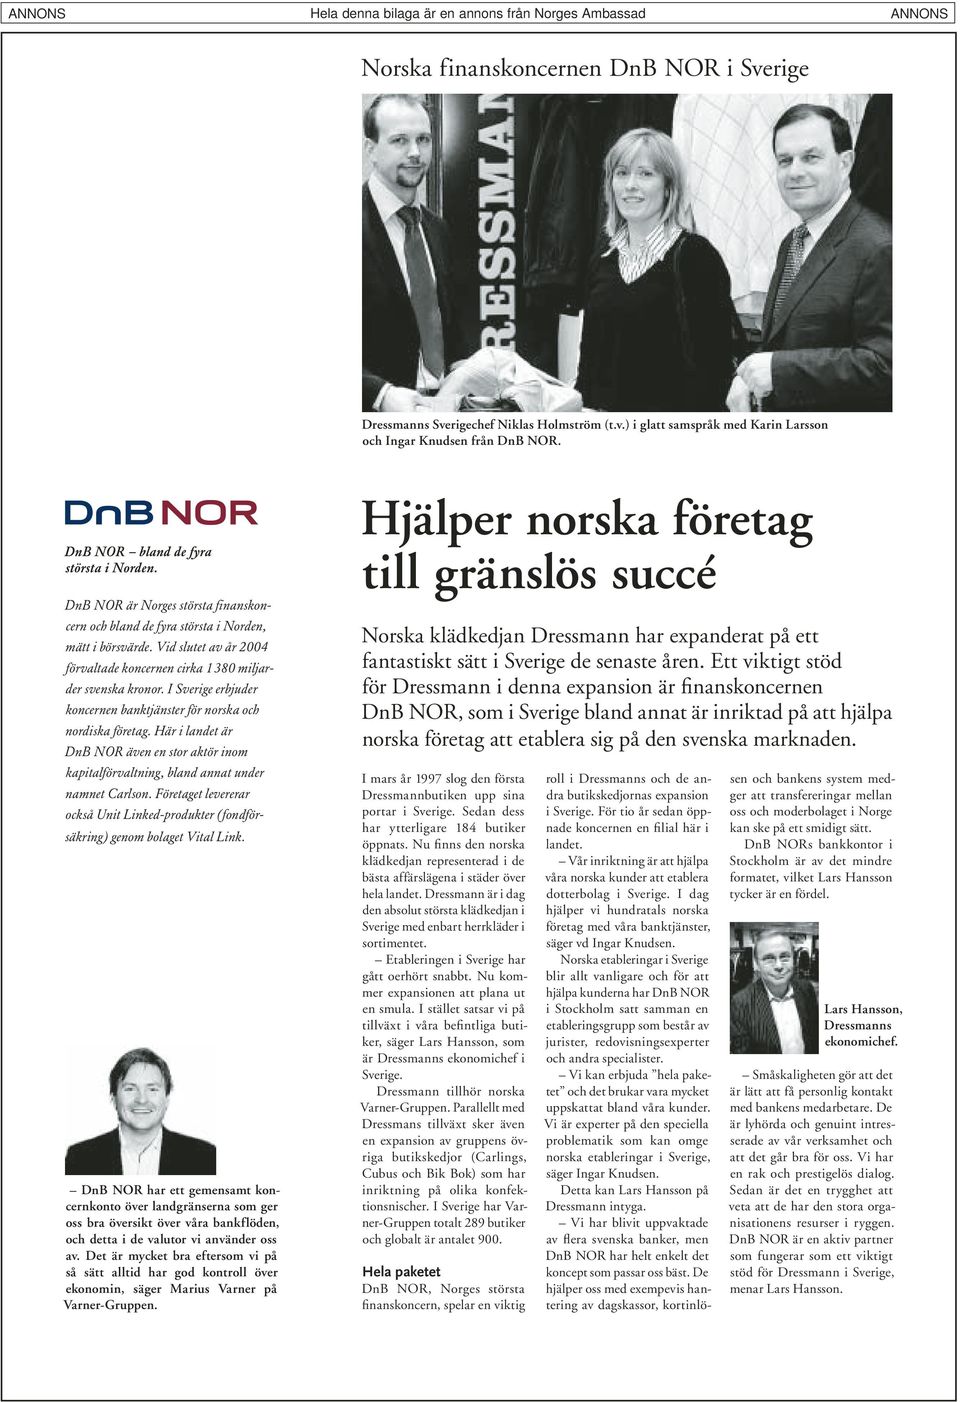 I Sverige erbjuder koncernen banktjänster för norska och nordiska företag. Här i landet är DnB NOR även en stor aktör inom kapitalförvaltning, bland annat under namnet Carlson.